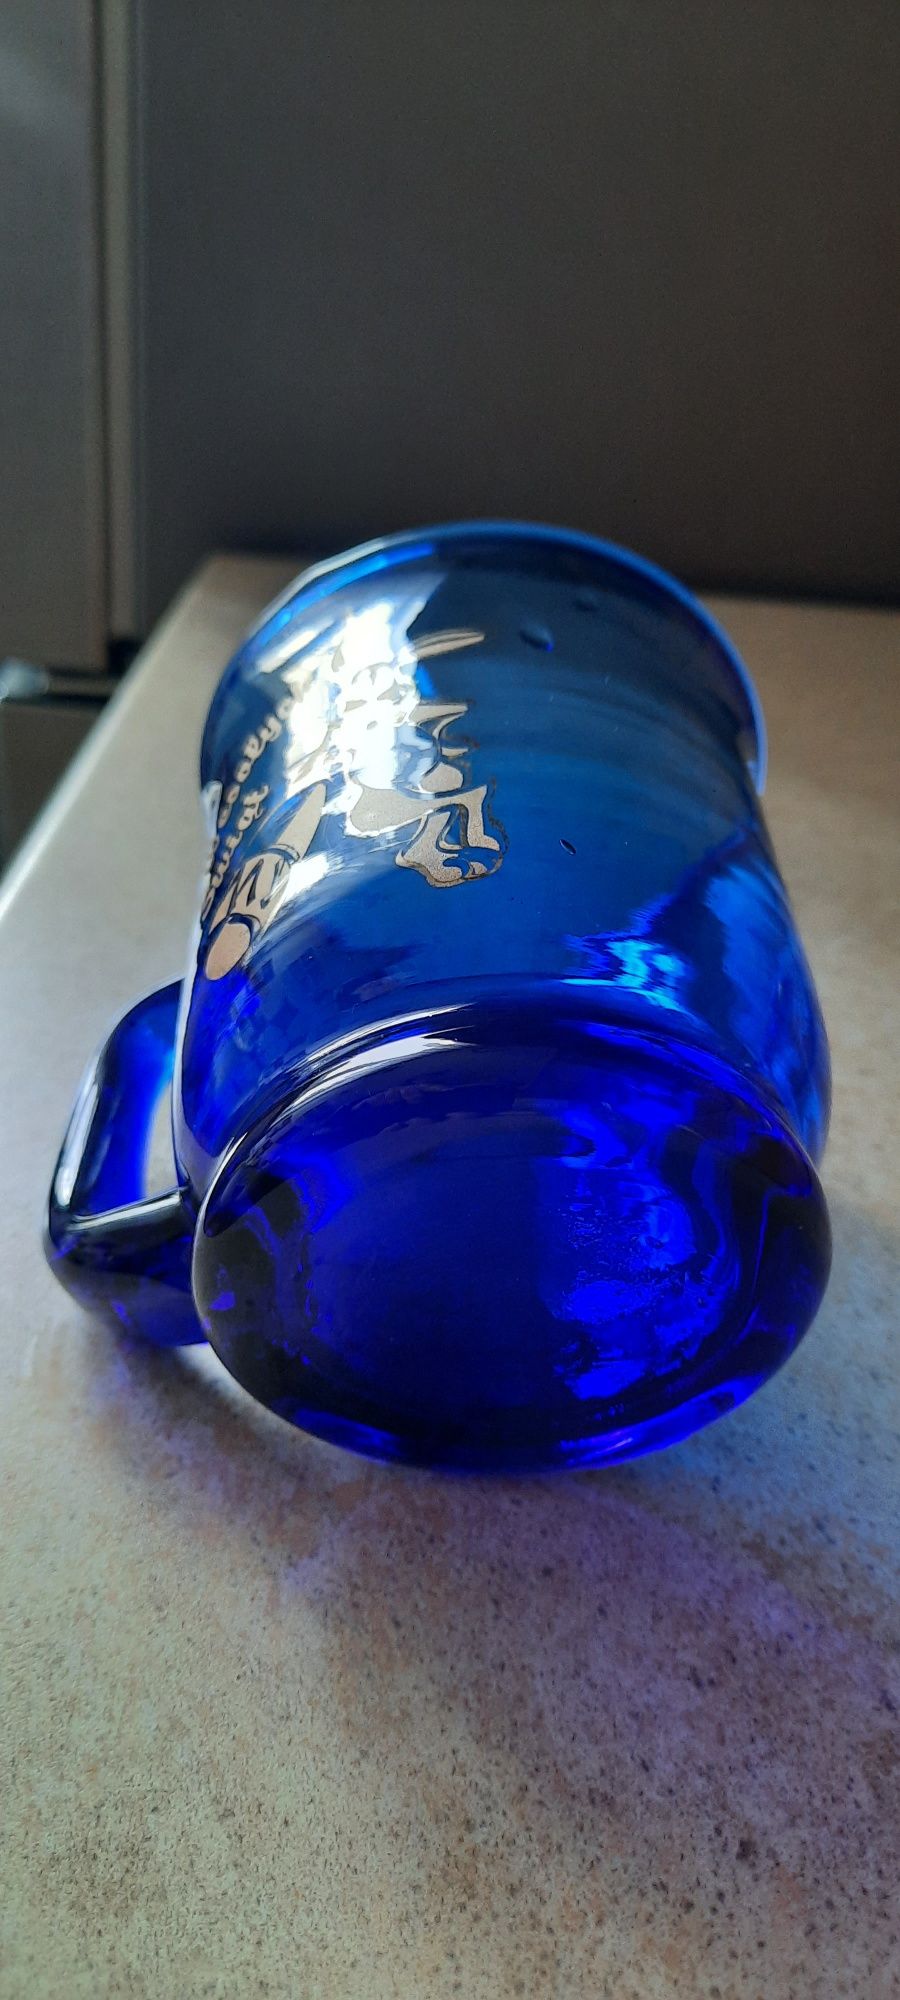 Szklany kufelek Wielkanoc kobalt